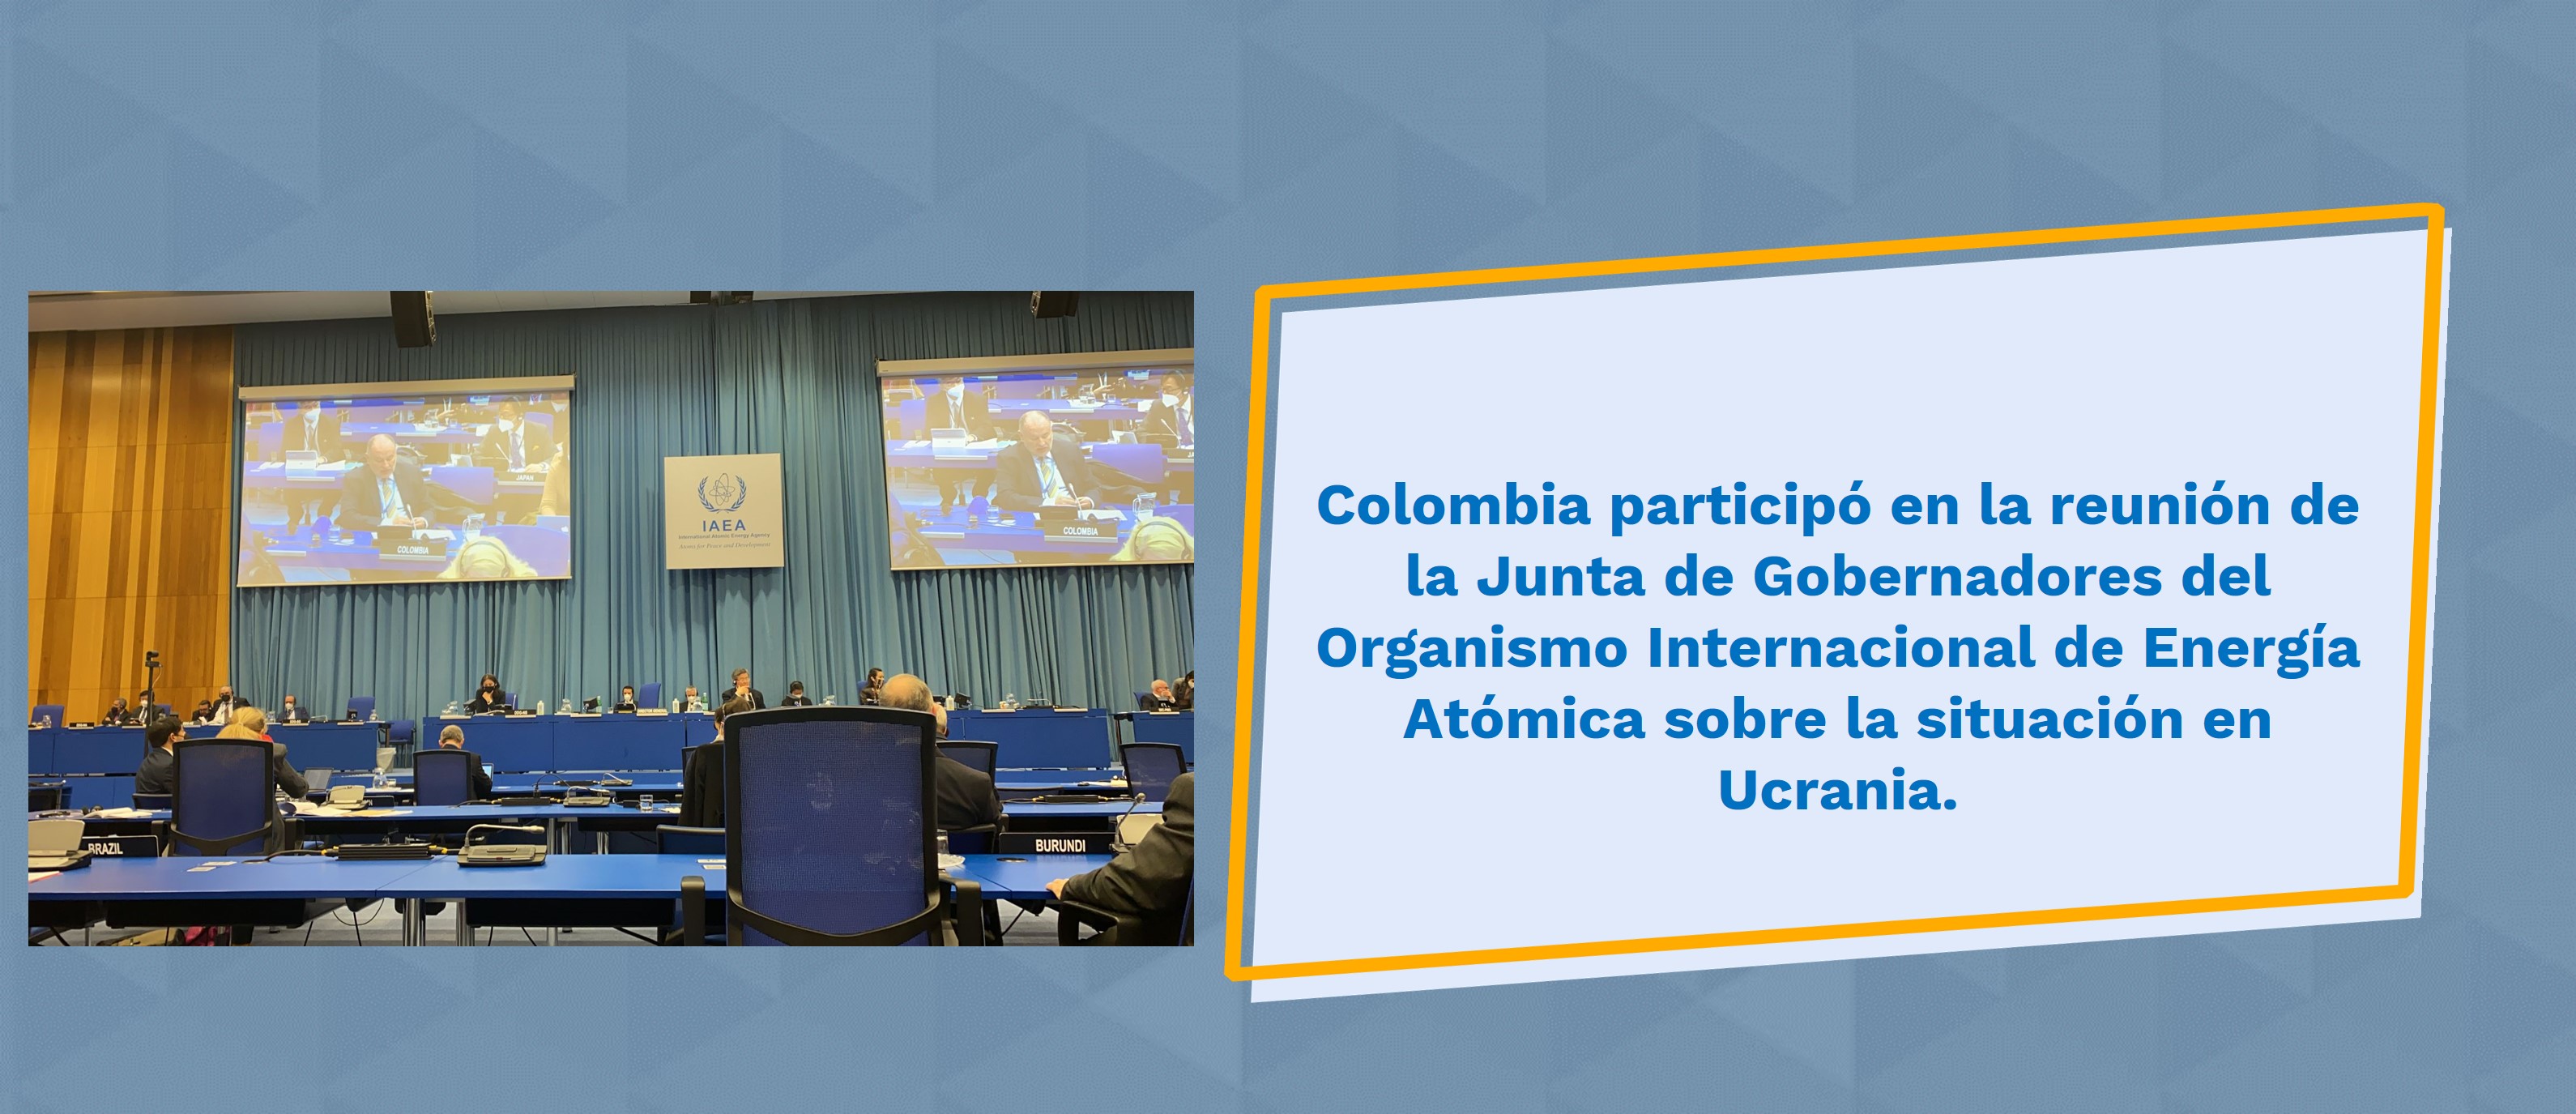 Configurar Colombia participó en la reunión de la Junta de Gobernadores del Organismo Internacional de Energía Atómica sobre la situación en Ucrania